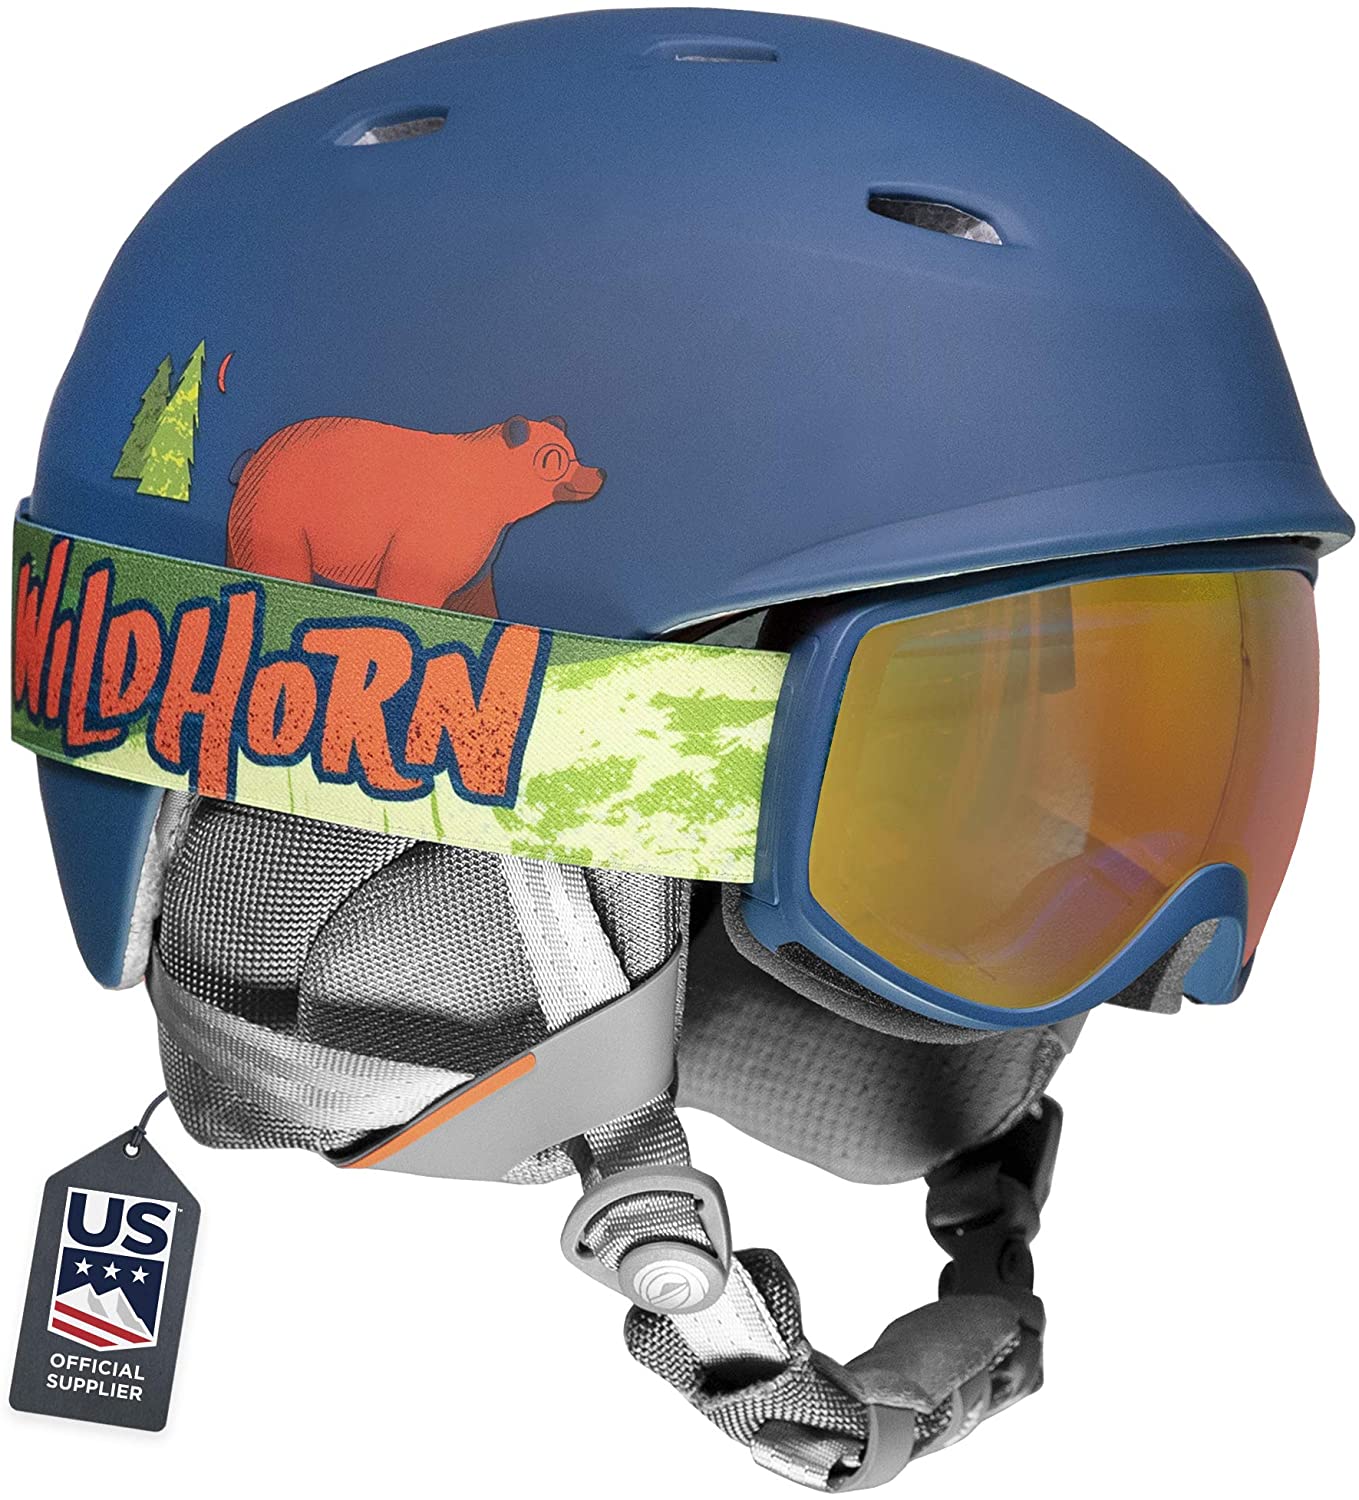 Wildhorn UV Goggles Adjustable Kids Ski Helmet